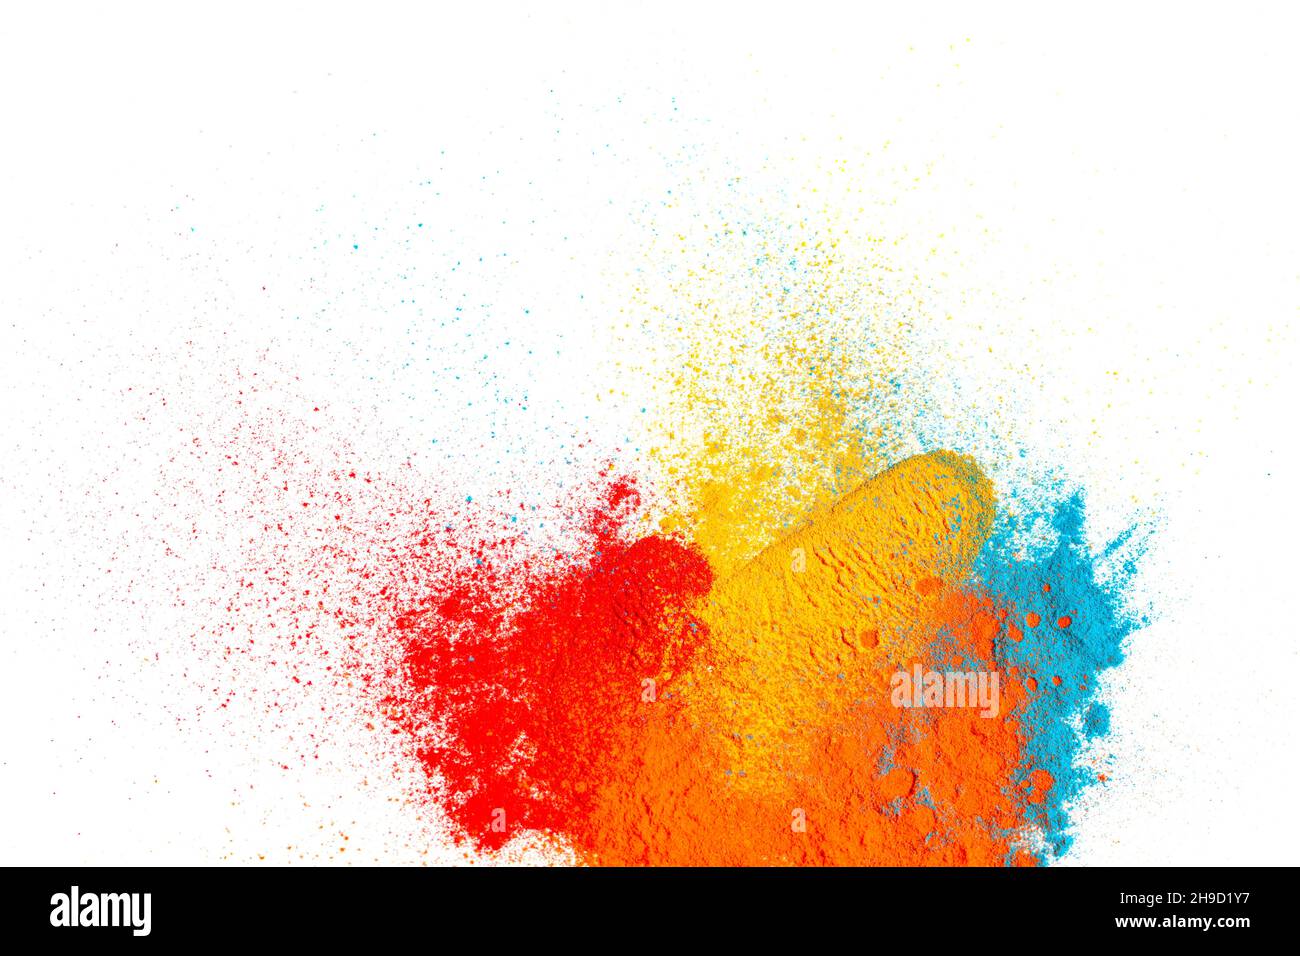 Vernice in polvere chimica astratta colorata e spruzzi su sfondo bianco. Esplosione di vernice multicolore isolata e particelle di polvere testurizzata. CR Foto Stock